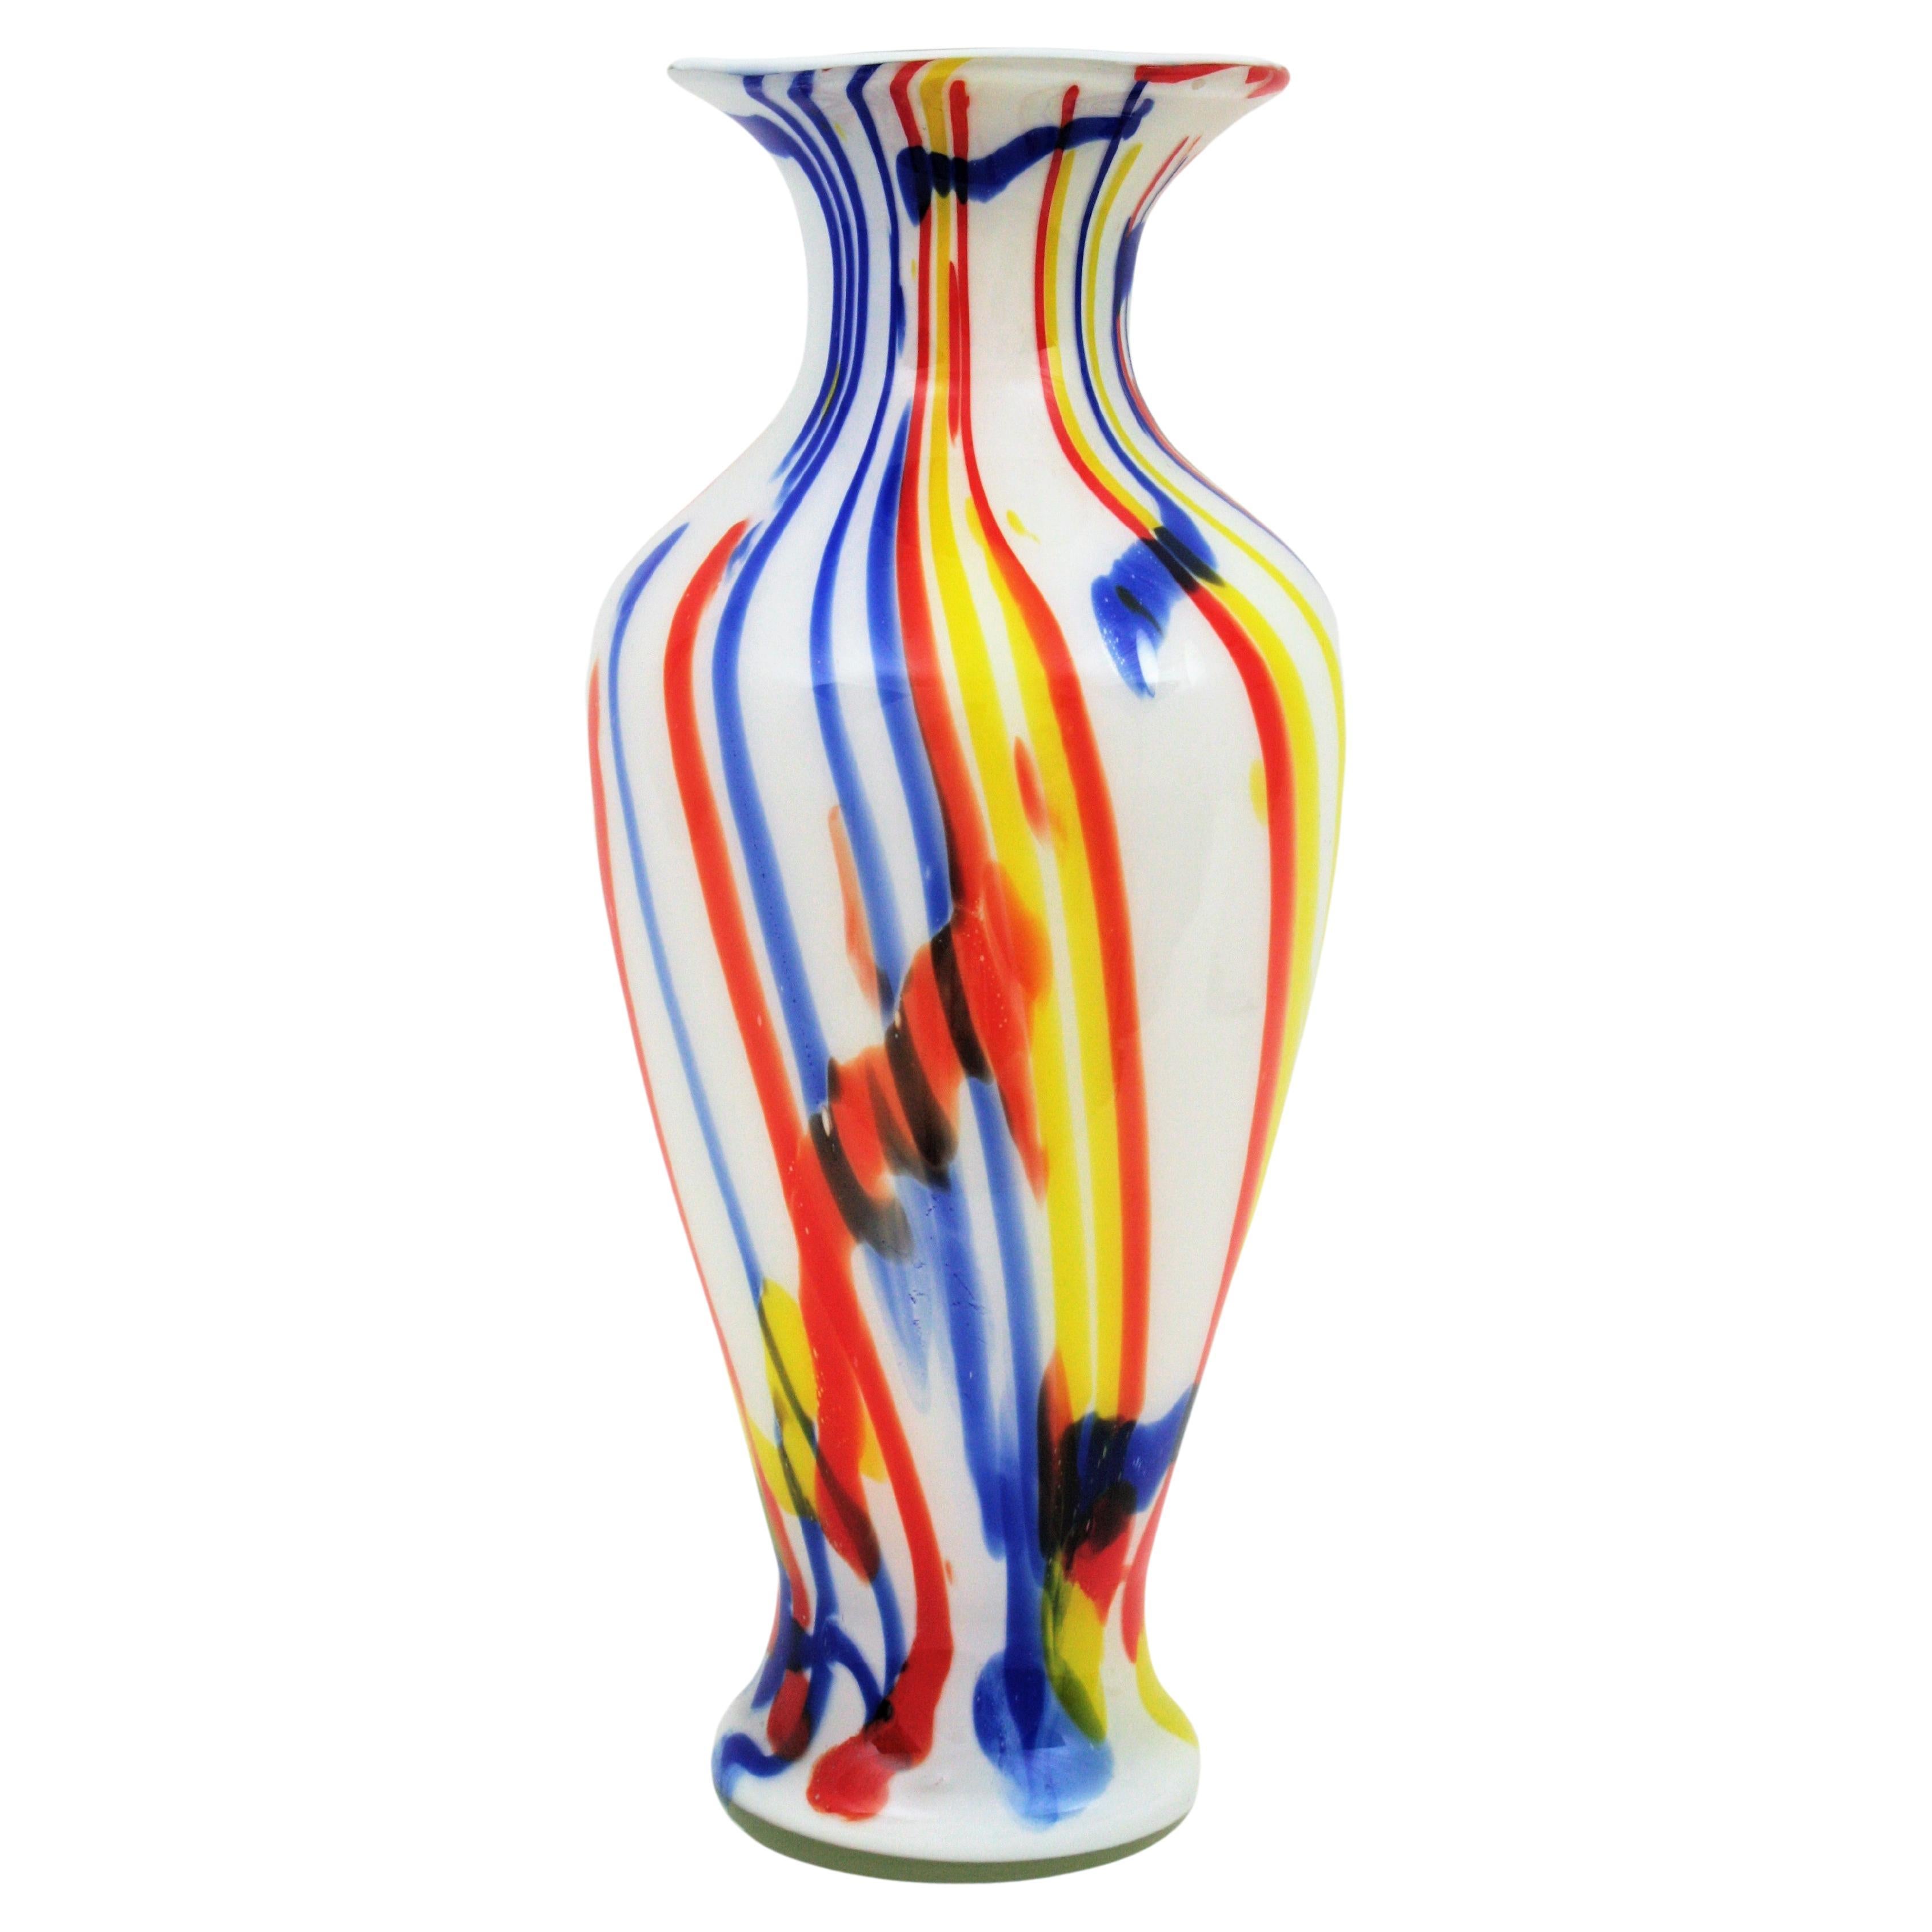 Übergroße weiße mundgeblasene Murano-Kunstglasvase mit mehrfarbigen Streifen, Italien, 1960er Jahre.
Große Vase aus mundgeblasenem weißem Murano-Glas mit buntem Murrinendekor in Rot, Gelb und Blau.
Wunderschön von allen Seiten und sehr groß.
Kann